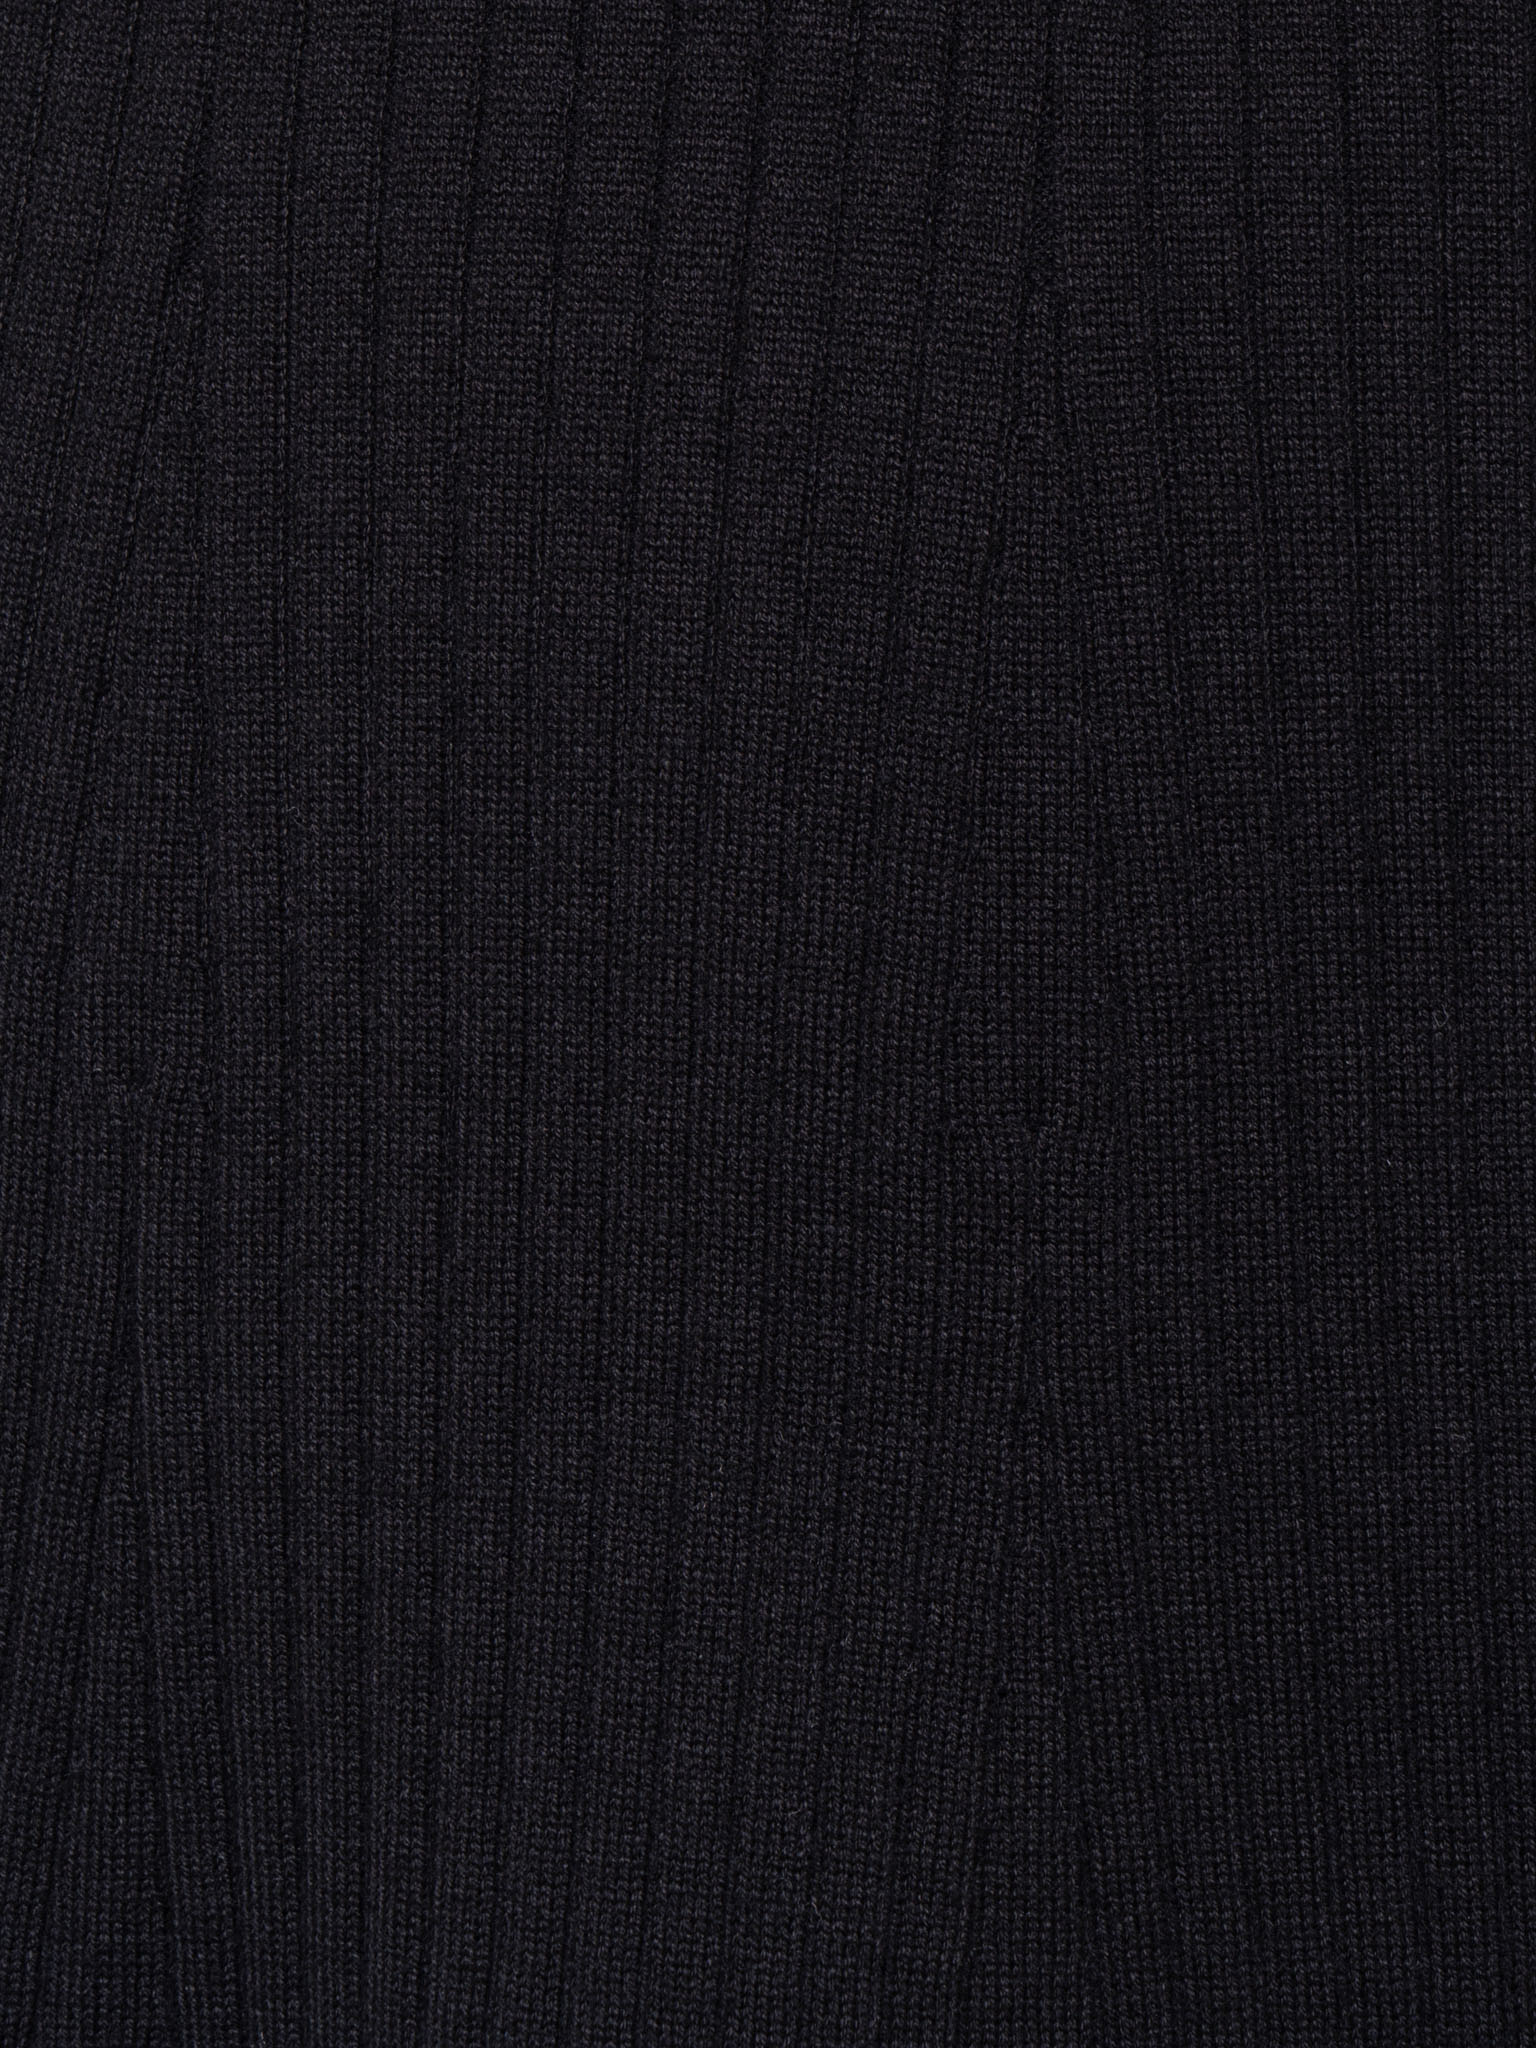 Asymmetric wrap-effect jersey mini dress :: LICHI - Online fashion store